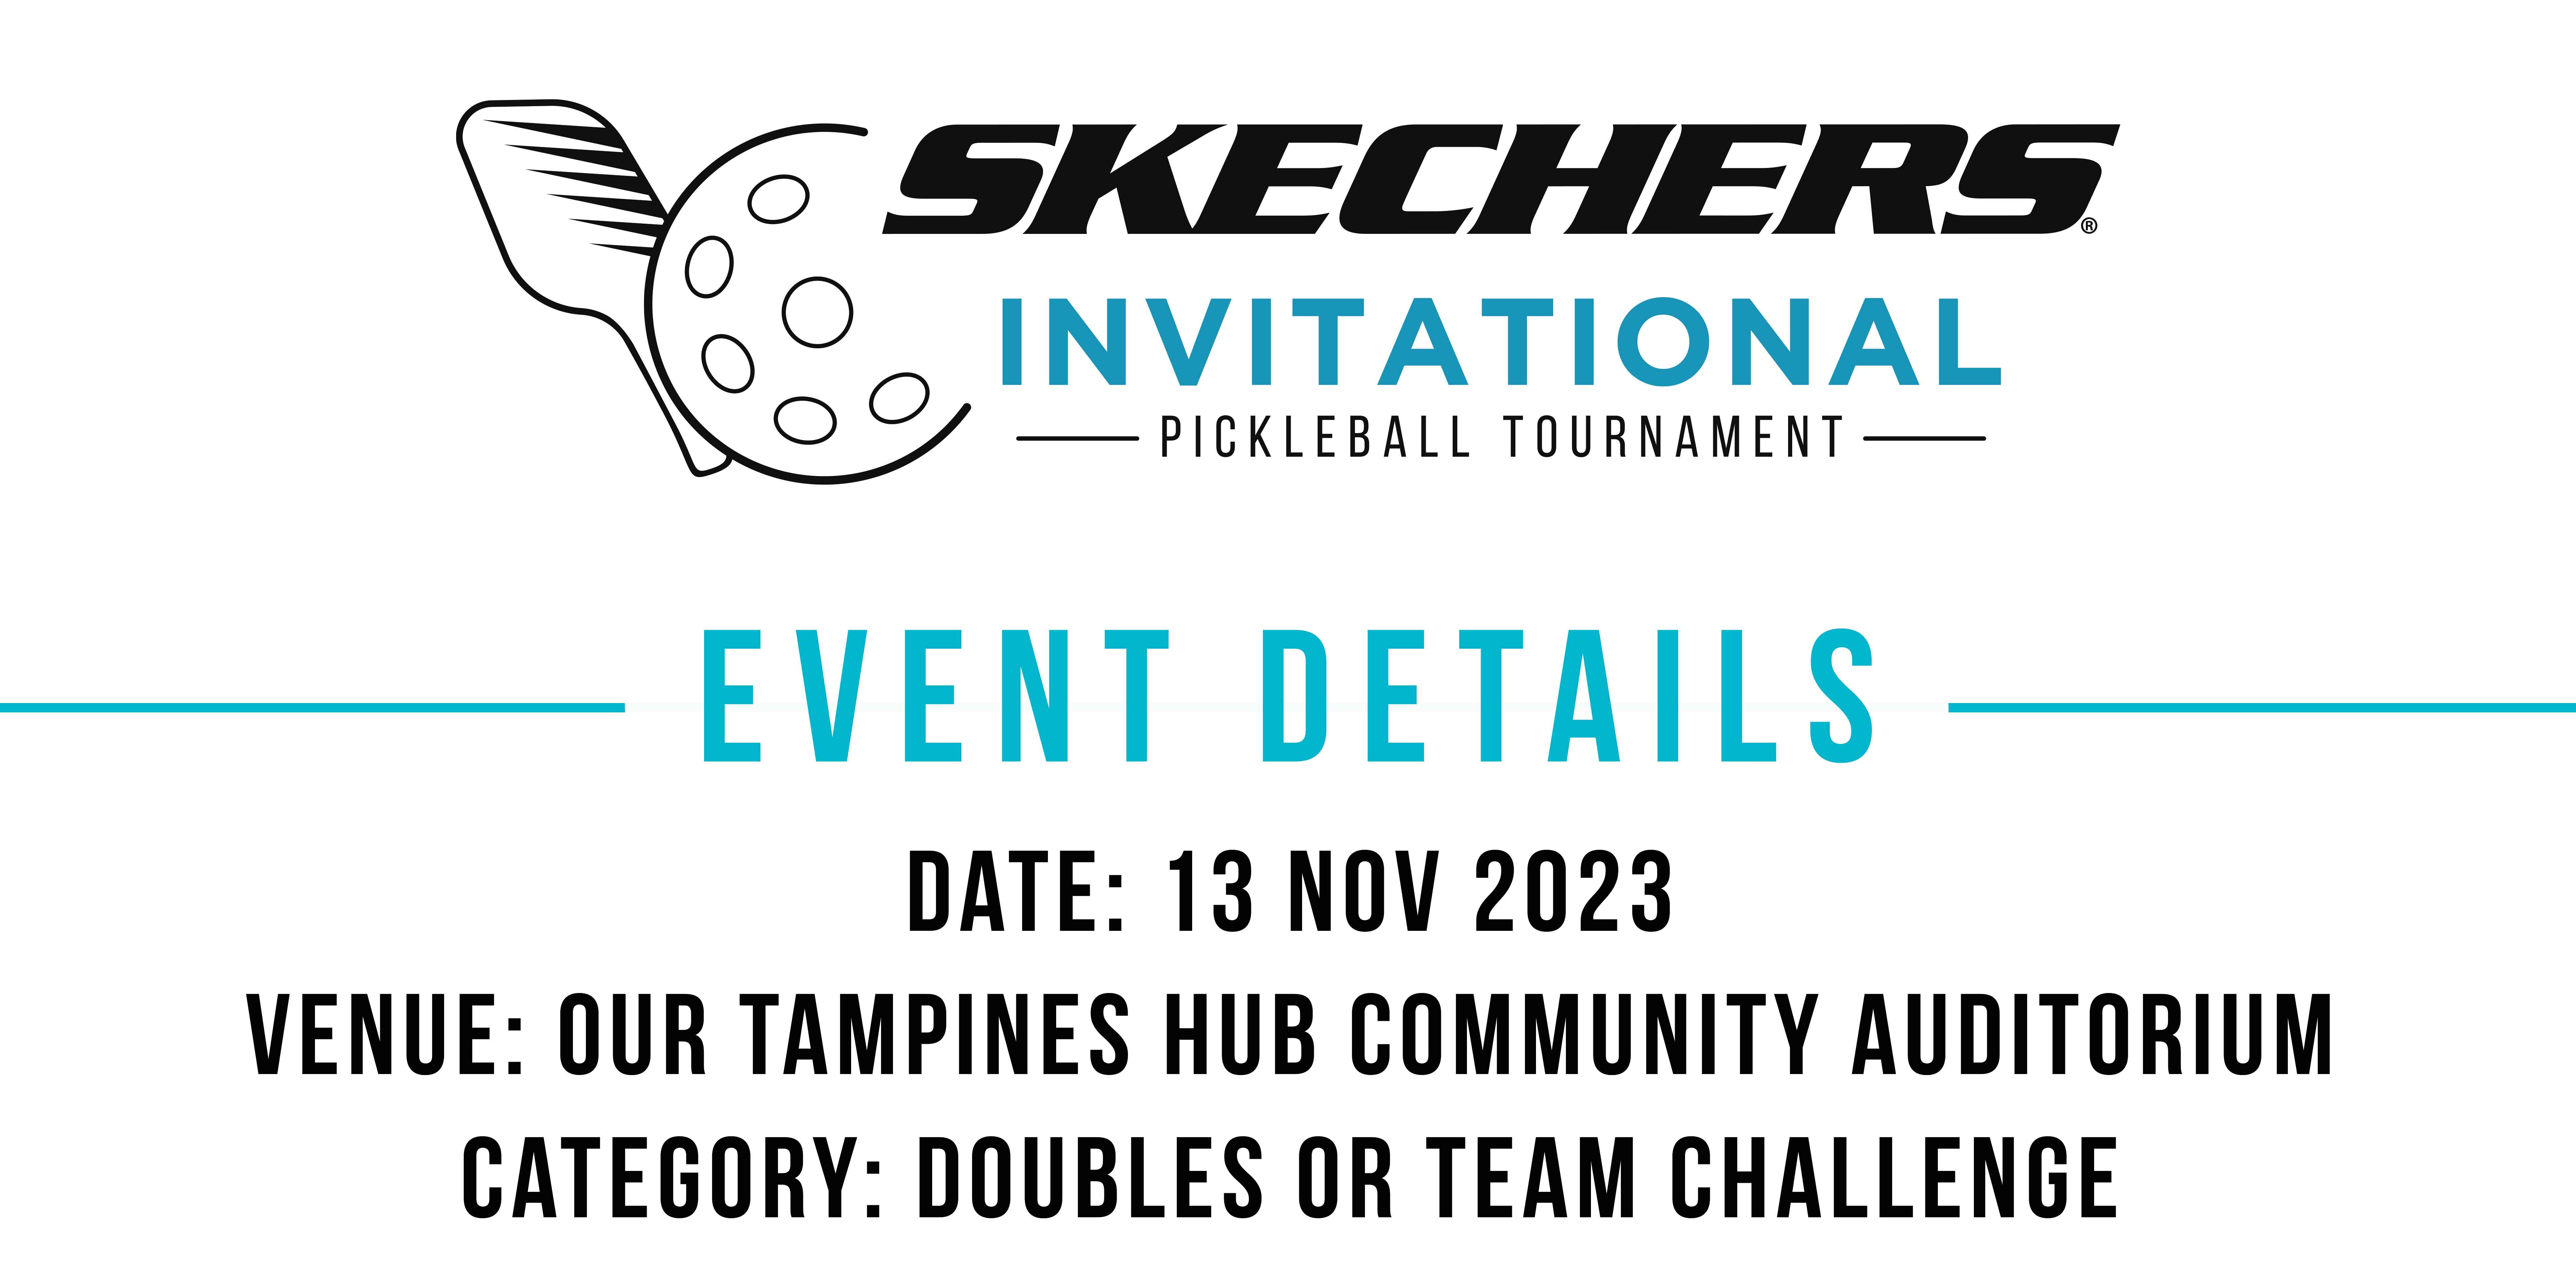 Skechers Invitational Pickleball Tournament